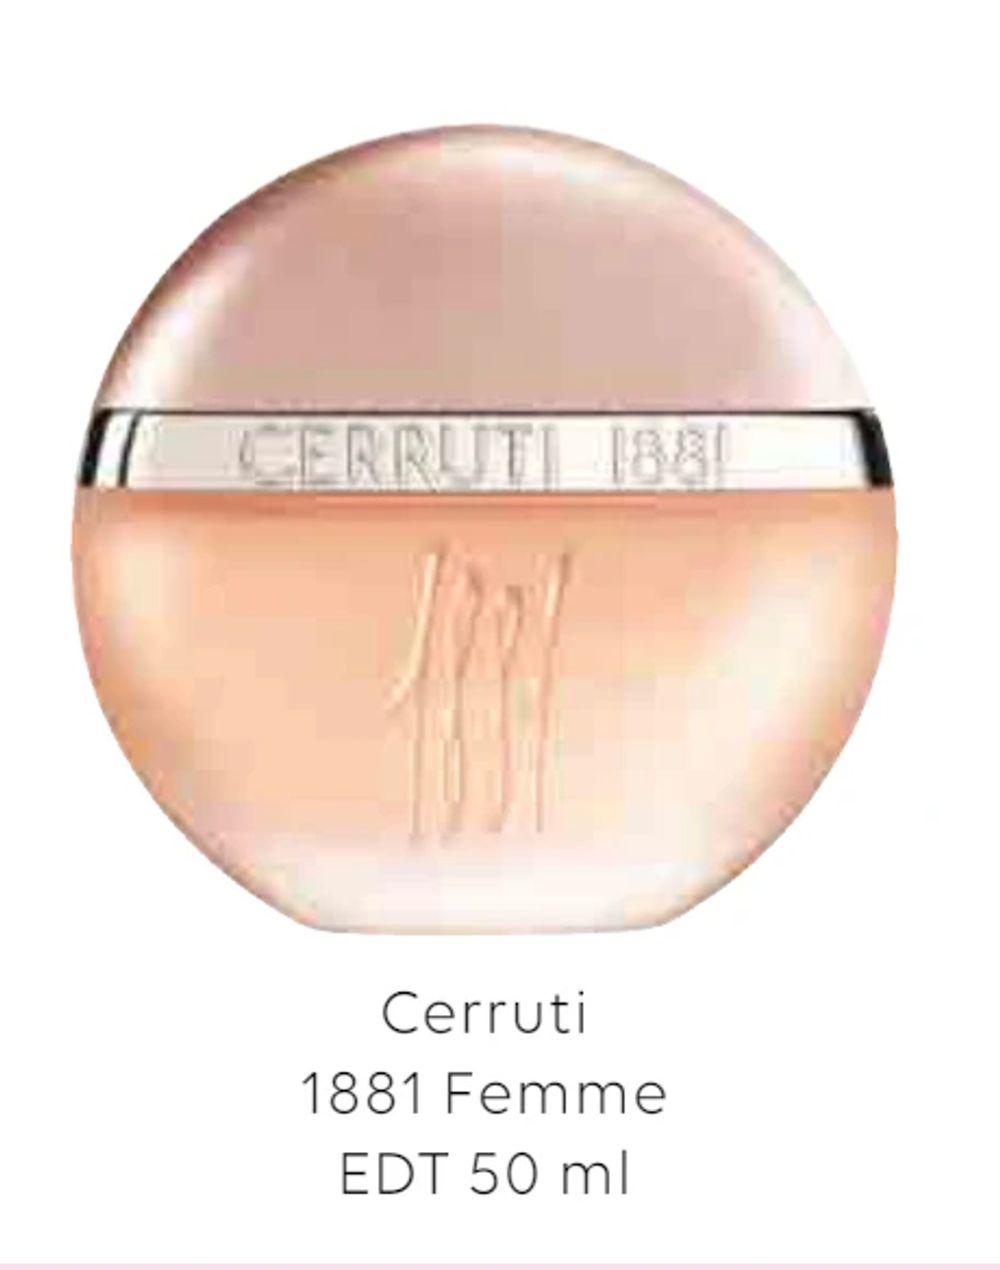 Erbjudanden på Cerruti 1881 Femme från Scandlines Travel Shop för 21,34 €